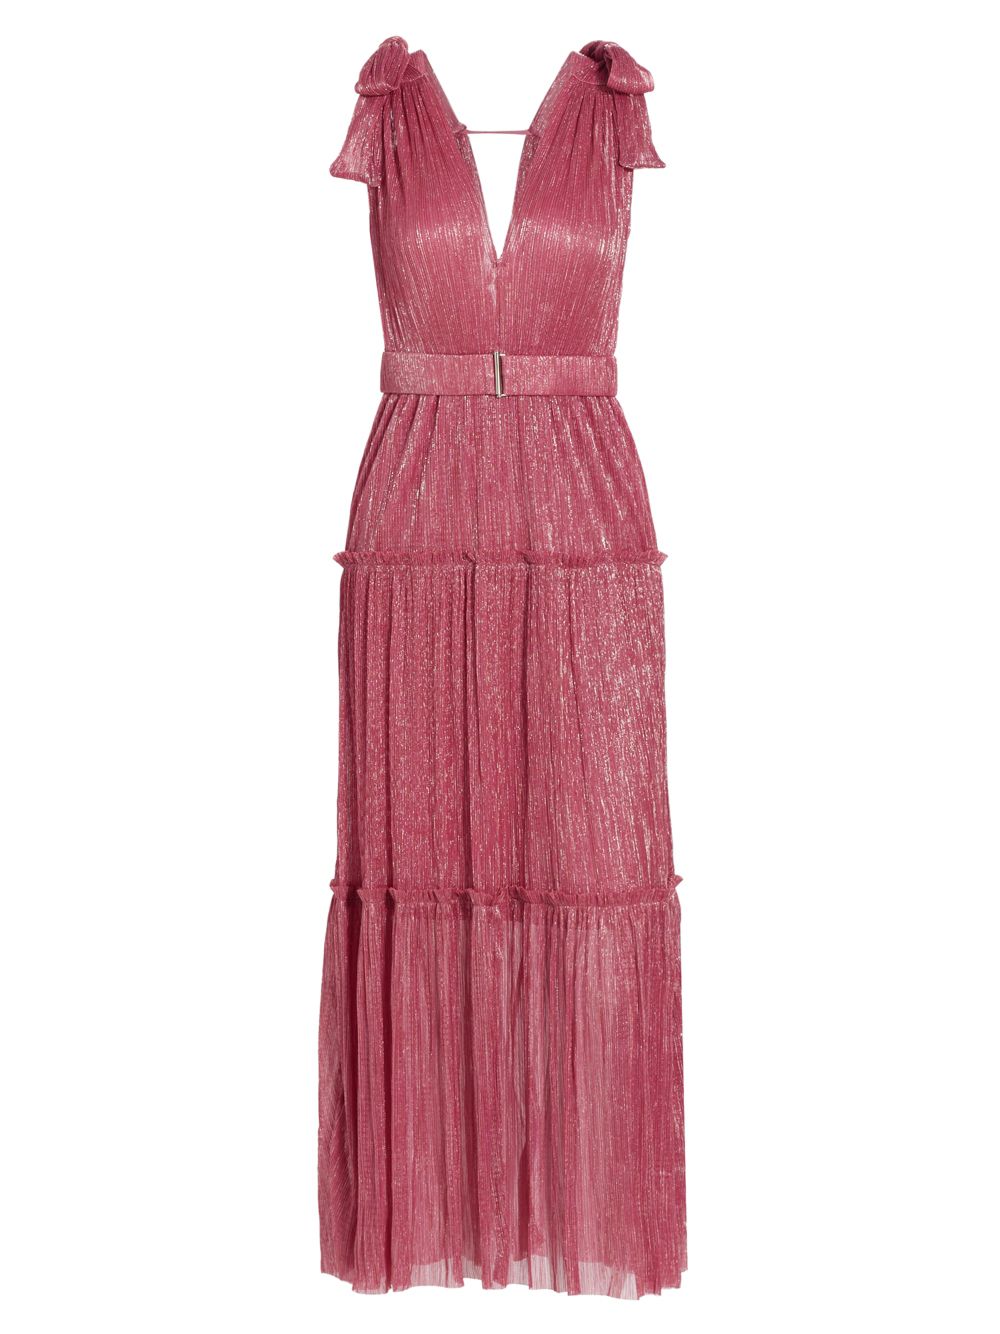 Ярусное платье макси Helena с эффектом металлик SABINA MUSÁYEV, розовый платье макси с эффектом металлик afek плиссе sabina musáyev цвет sandstone